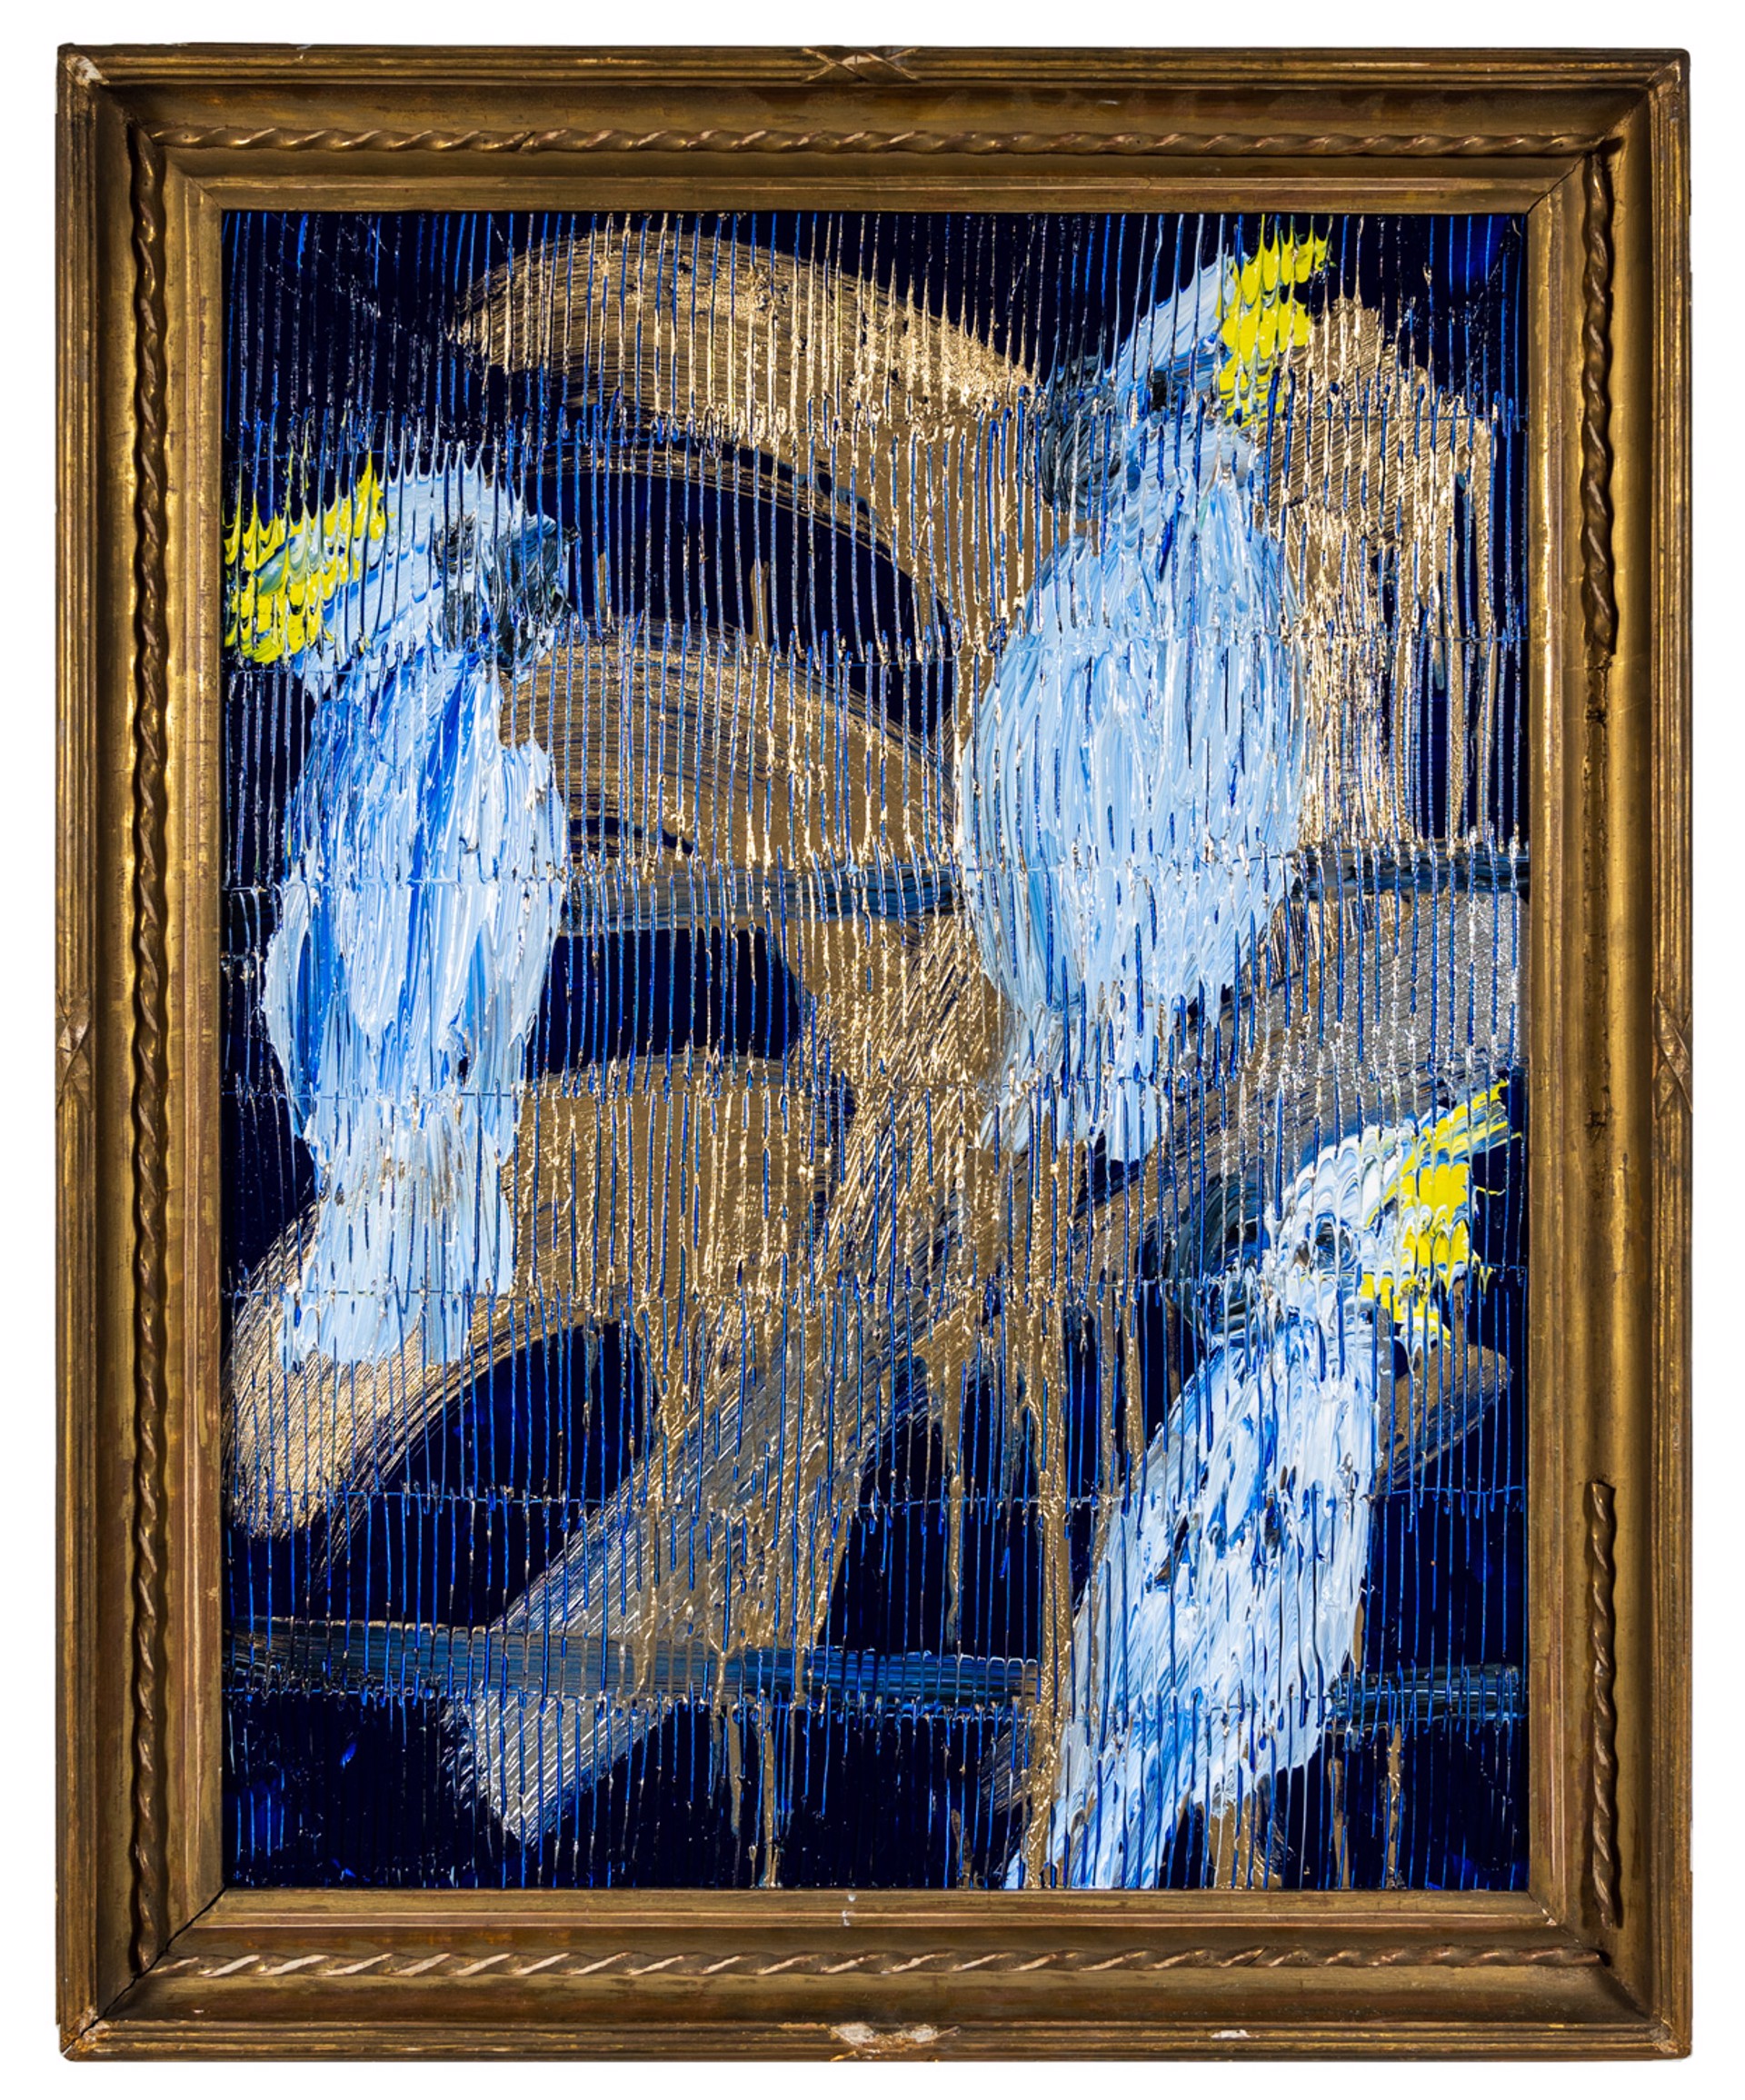 Hunt Slonem Art For Sale - Hunt Slonem 3 Cockatoo Monsoon in Blue, 2022 Oil on Wood29 x 22.50 in